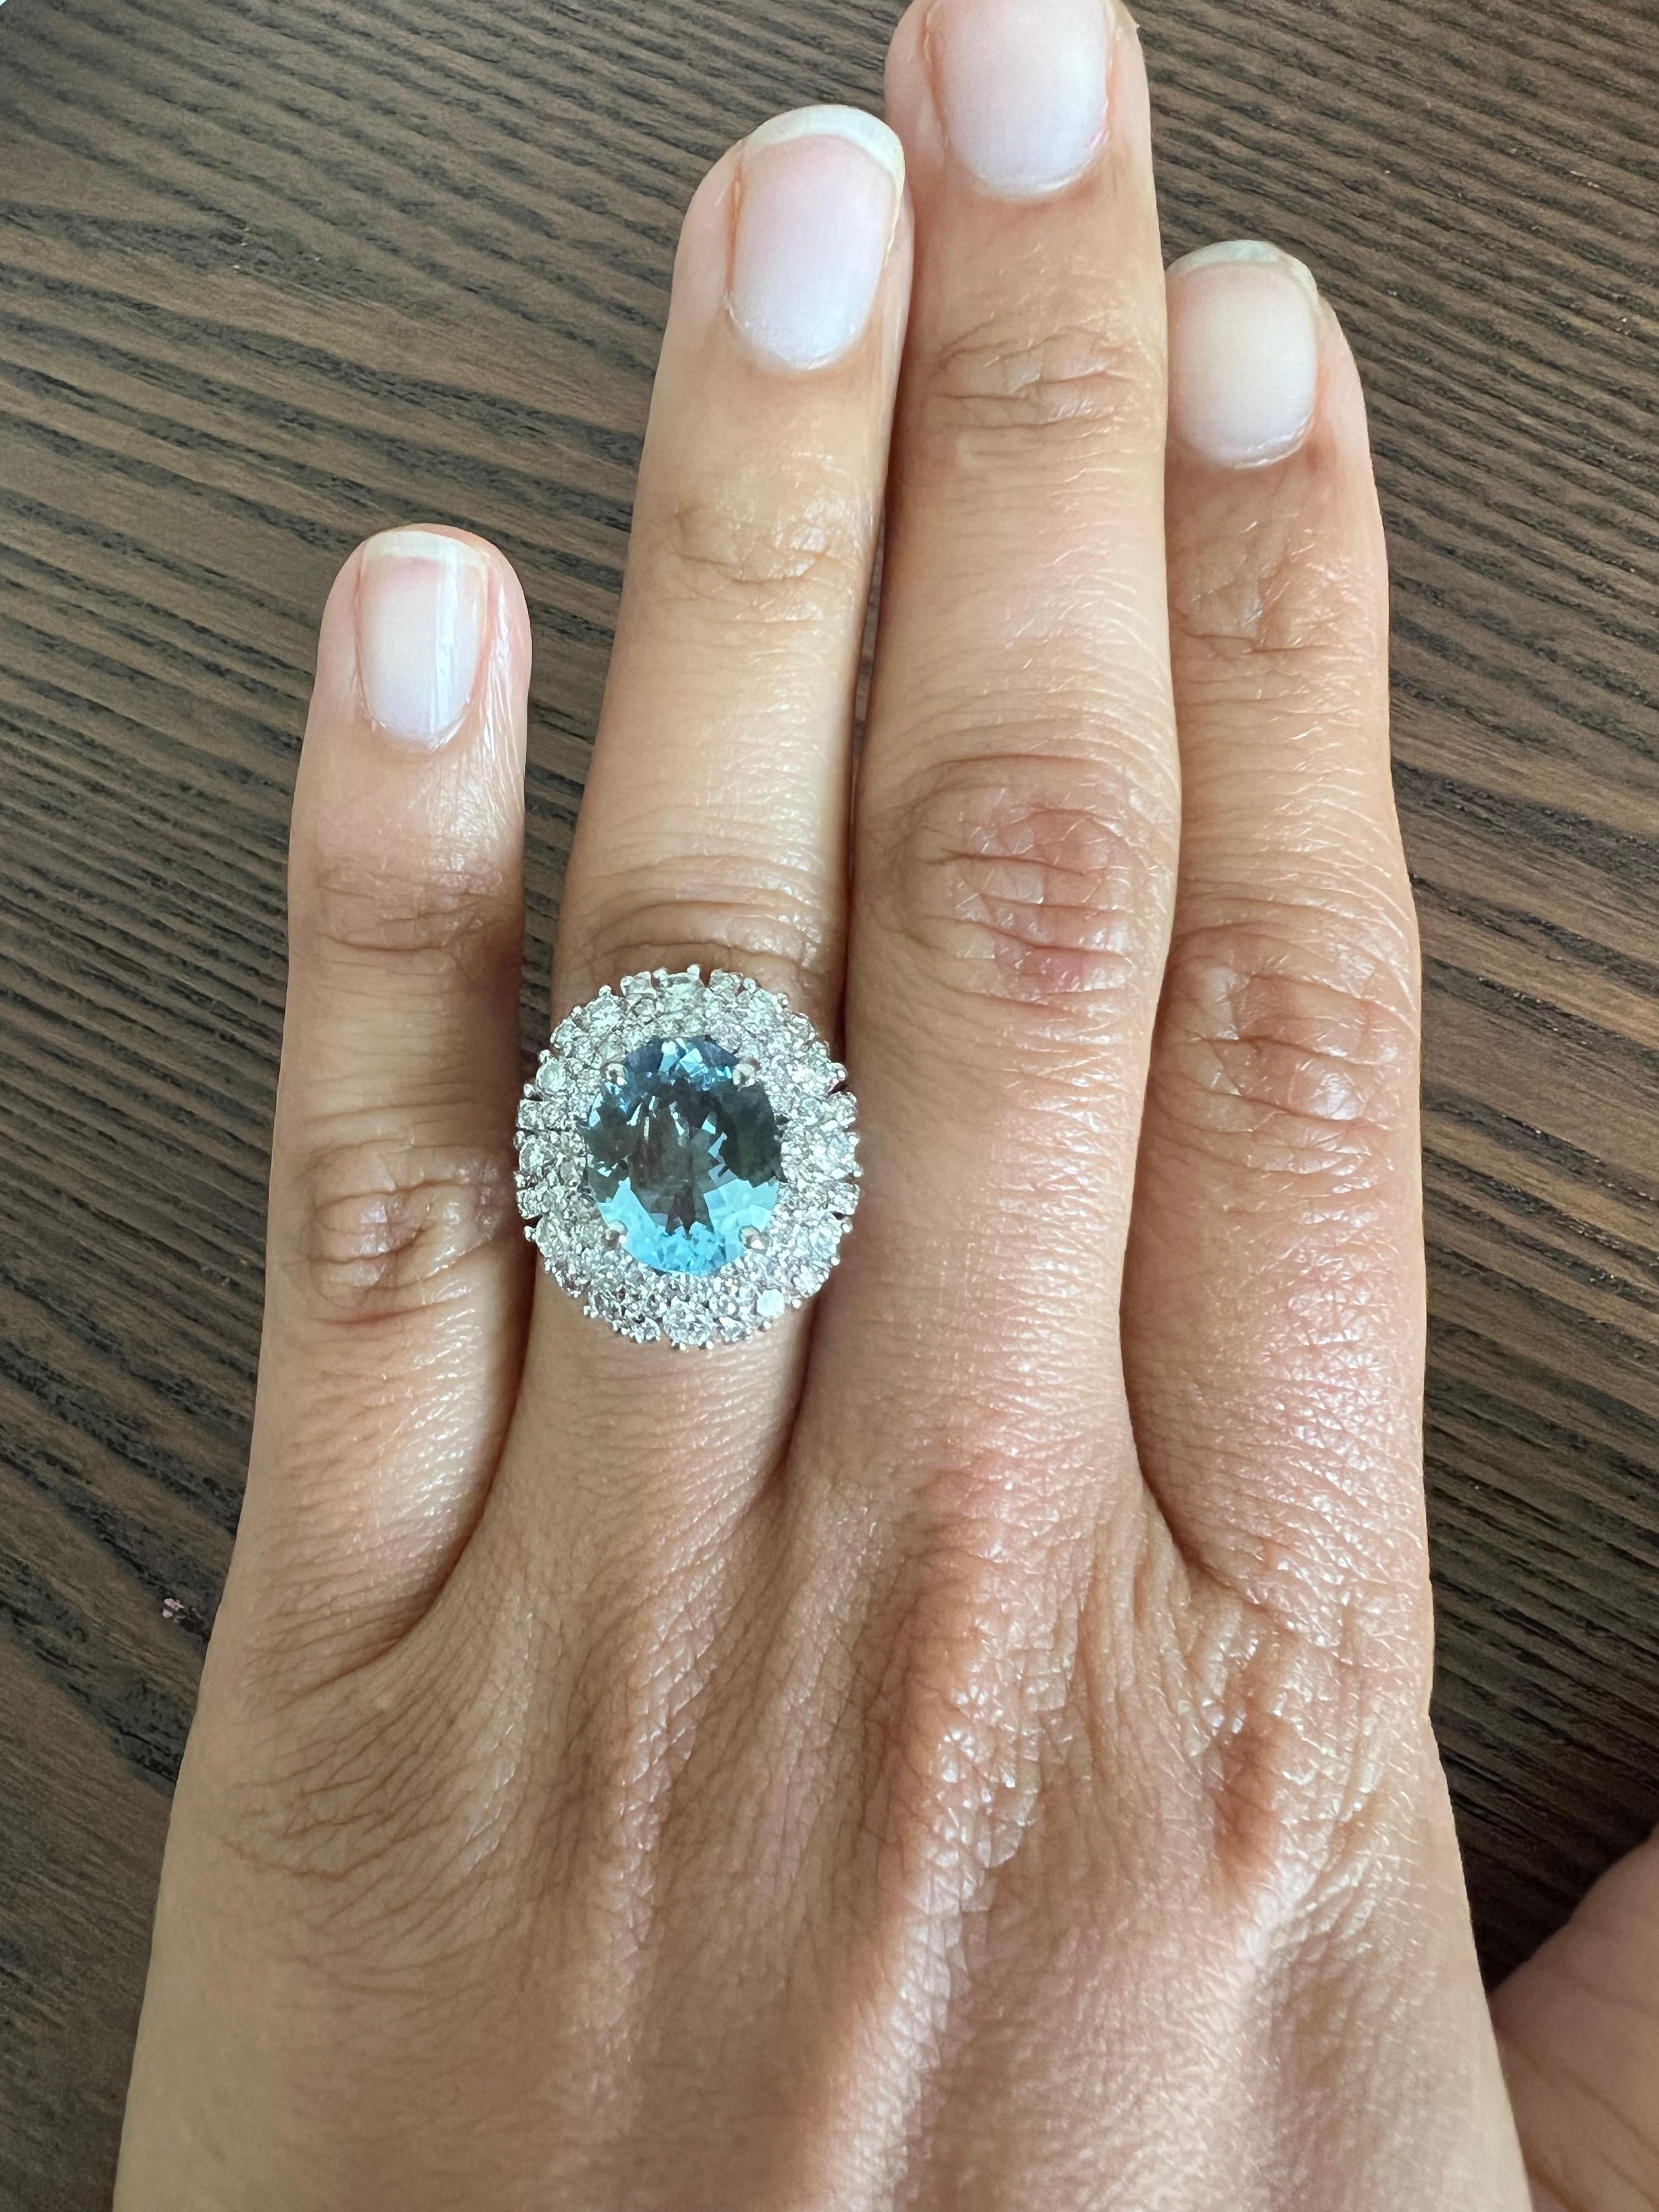 10 carat aquamarine ring